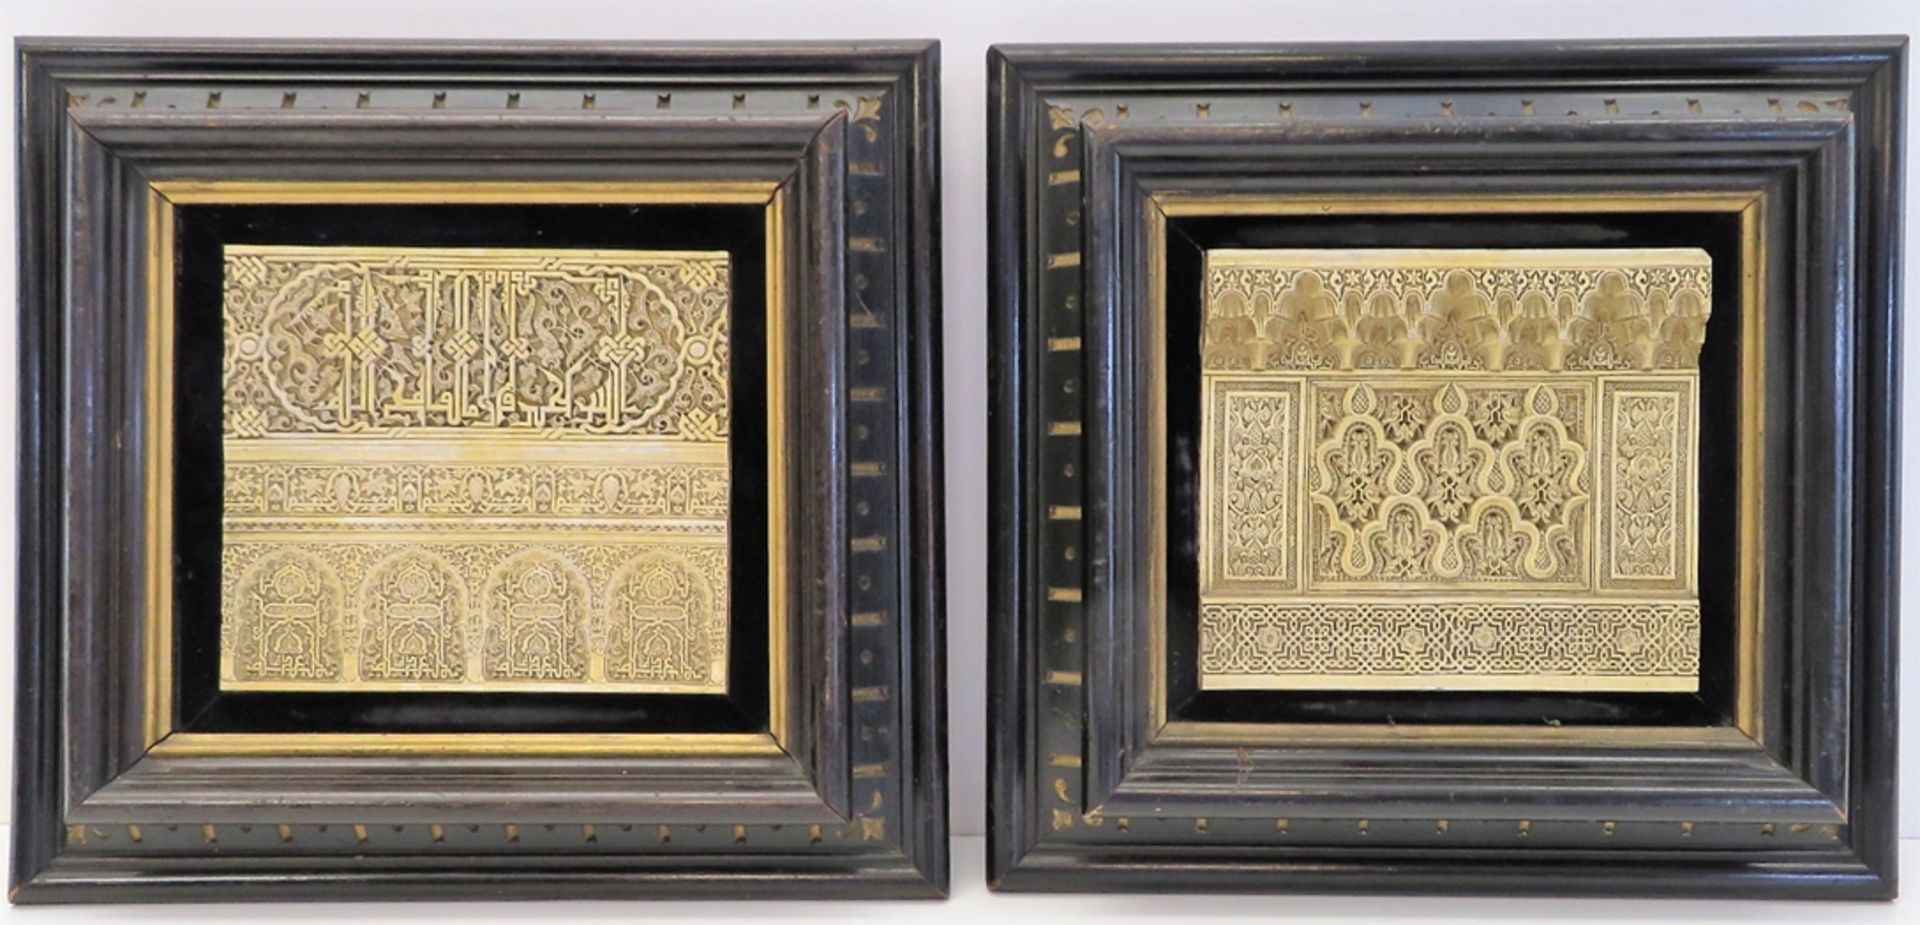 2 Relief-Arbeiten, Alhambra, Kunstguss, gerahmt, 30 x 31 x 5 cm. - Bild 2 aus 3